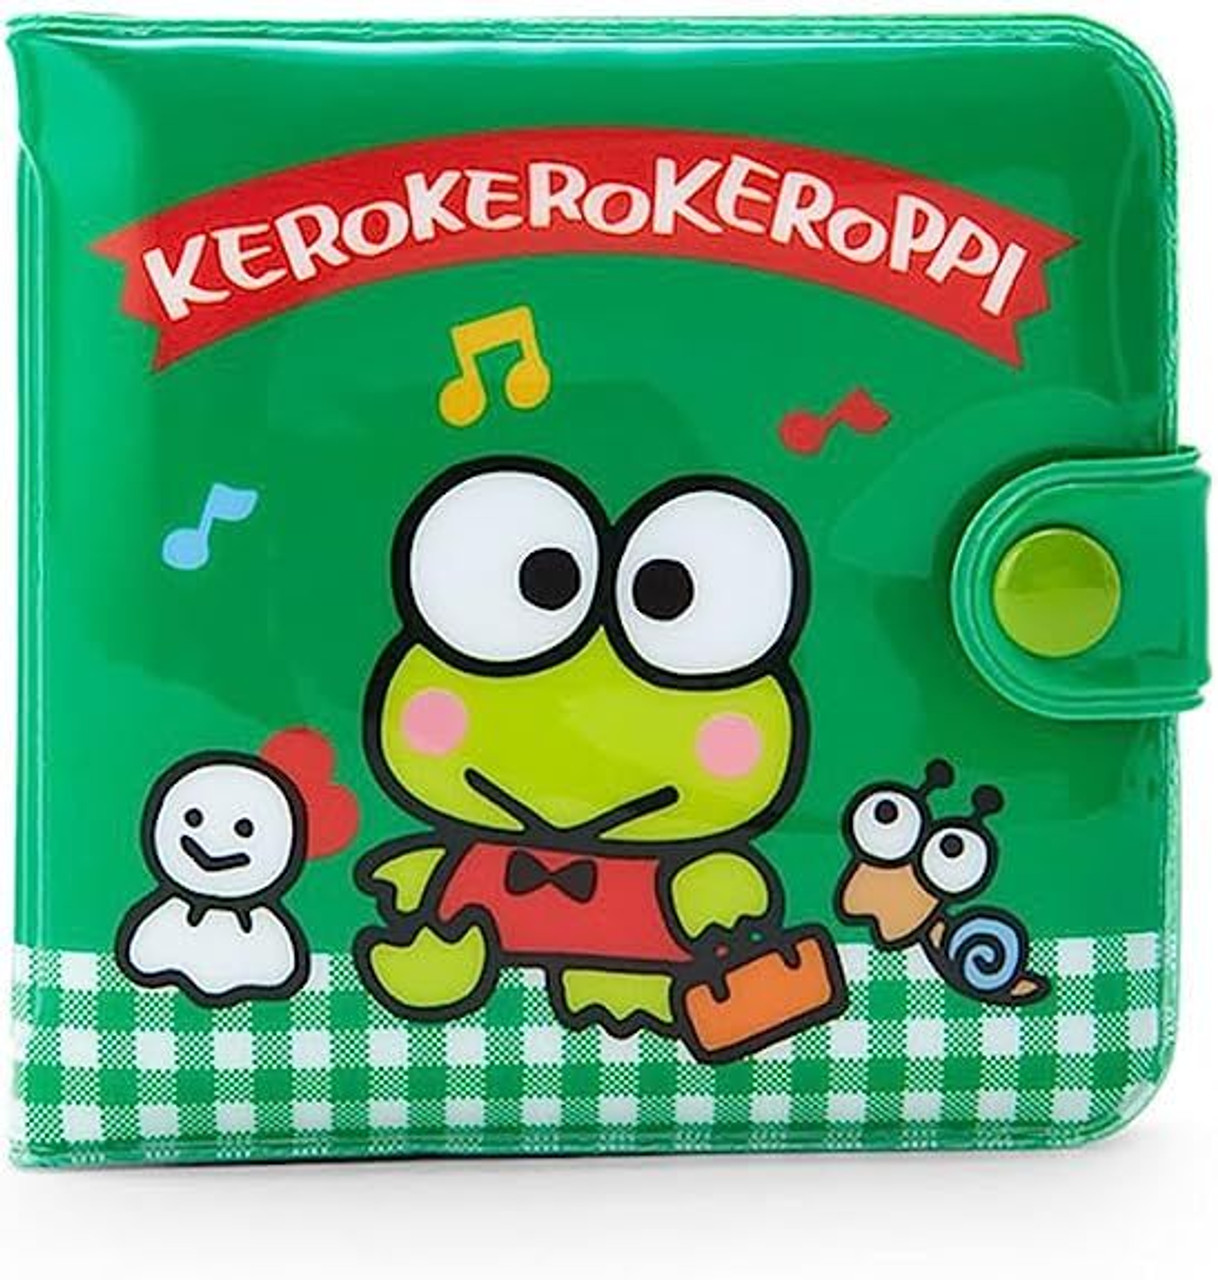 Sanrio Vinyl Wallet - Keroppi - KeroKeroKeroppi